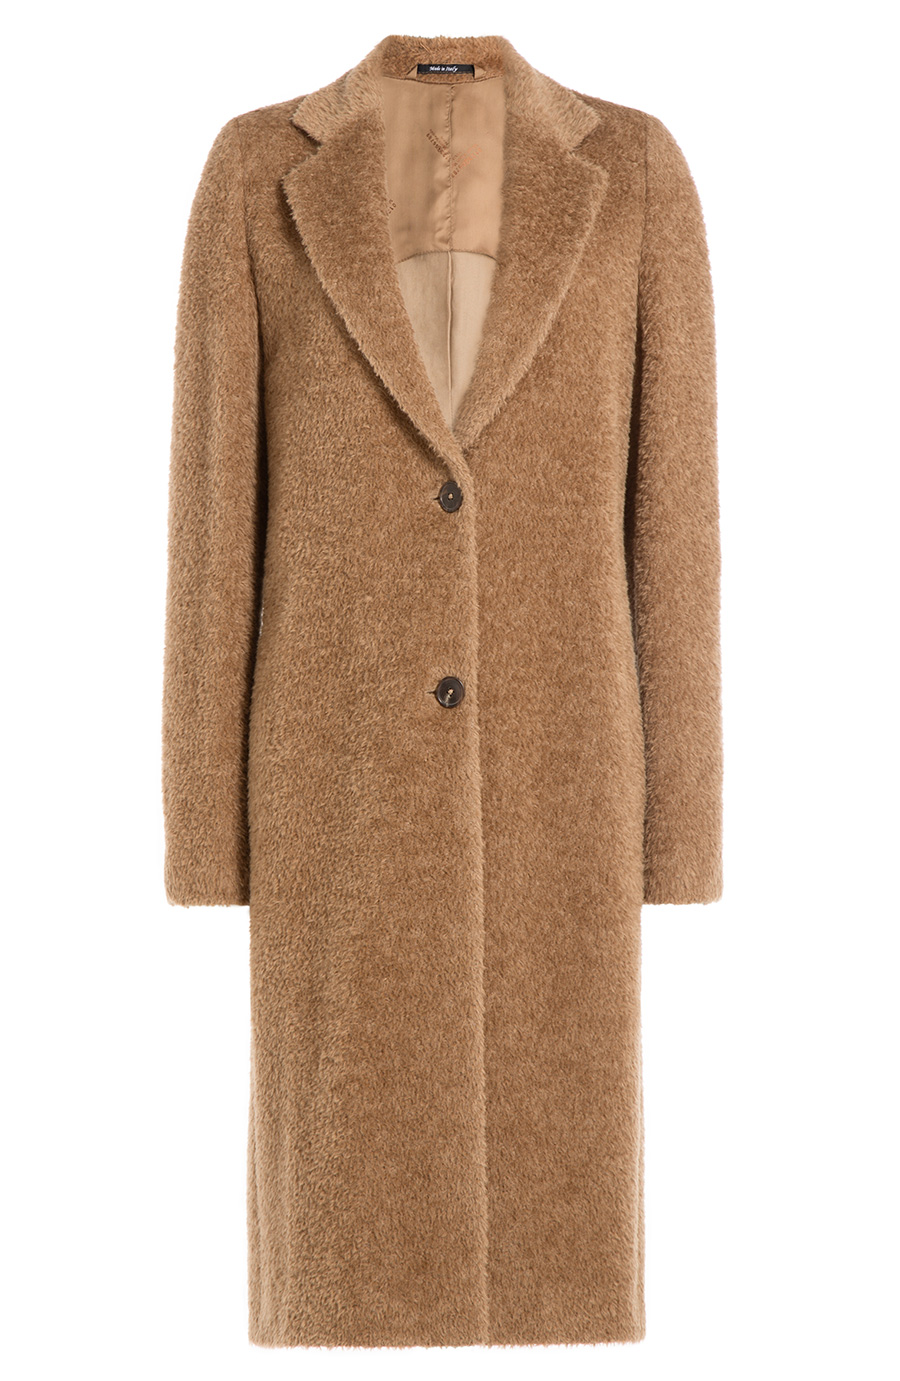 Maison Margiela Alpaca And Wool Coat In Camel | ModeSens